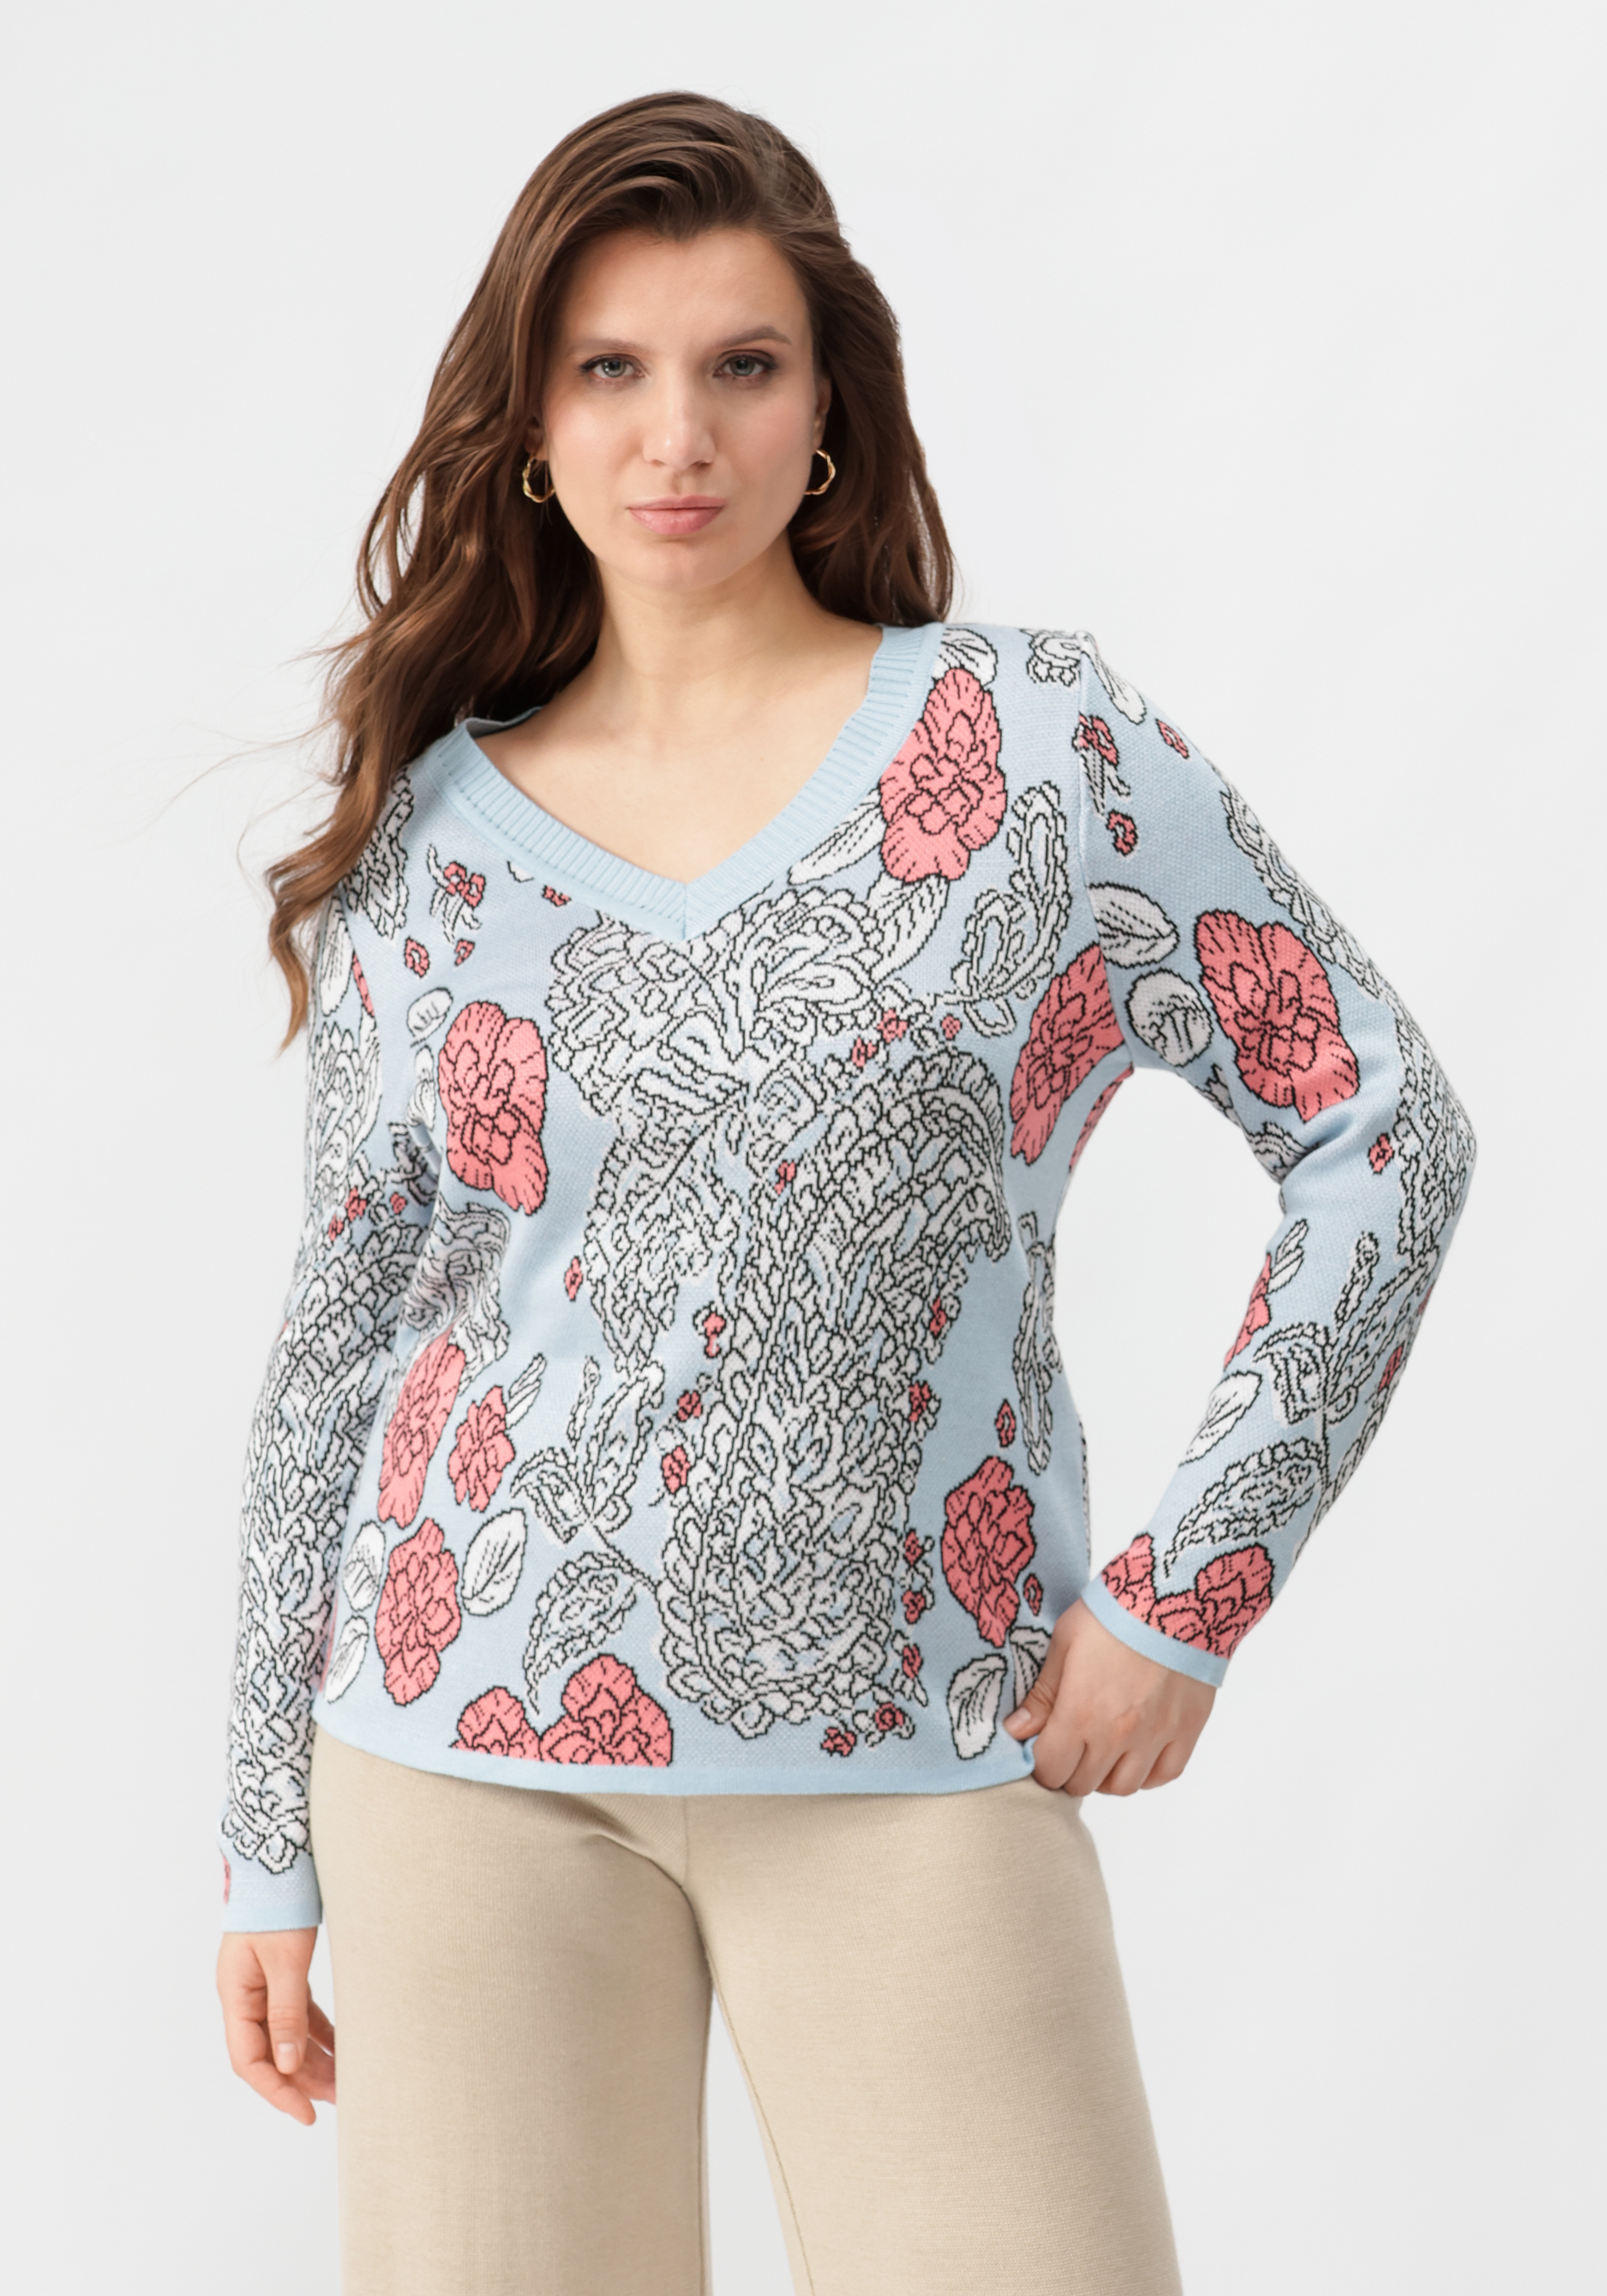 Пуловер с V-образным вырезом, цветным принтом жен пуловер дилара белый р 52 54